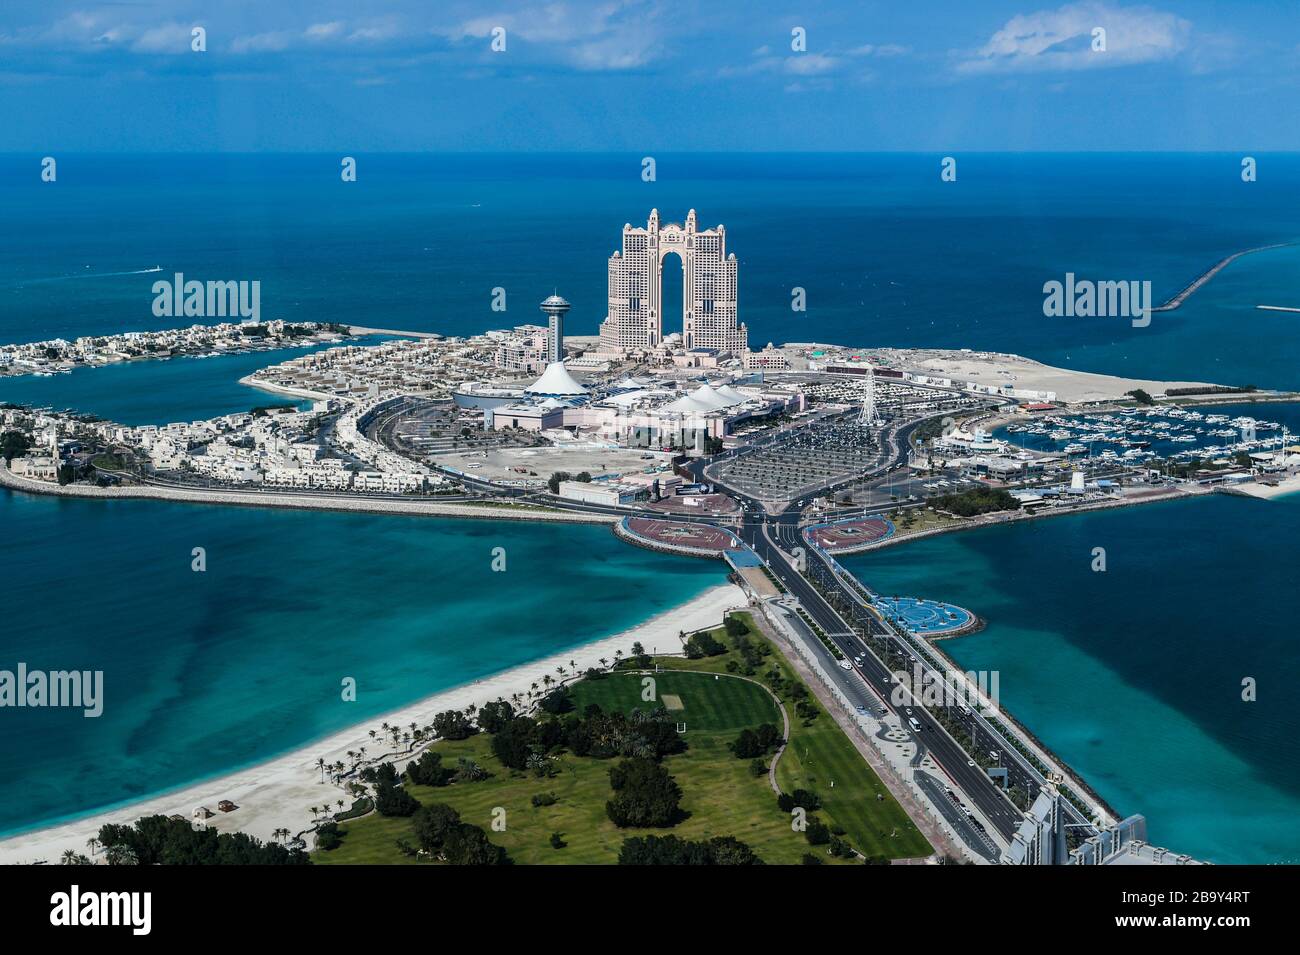 Emiratos Árabes Unidos. Abu Dhabi. Vista de la isla al Kasir, el centro comercial Marina Mall y el hotel Fairmont Foto de stock